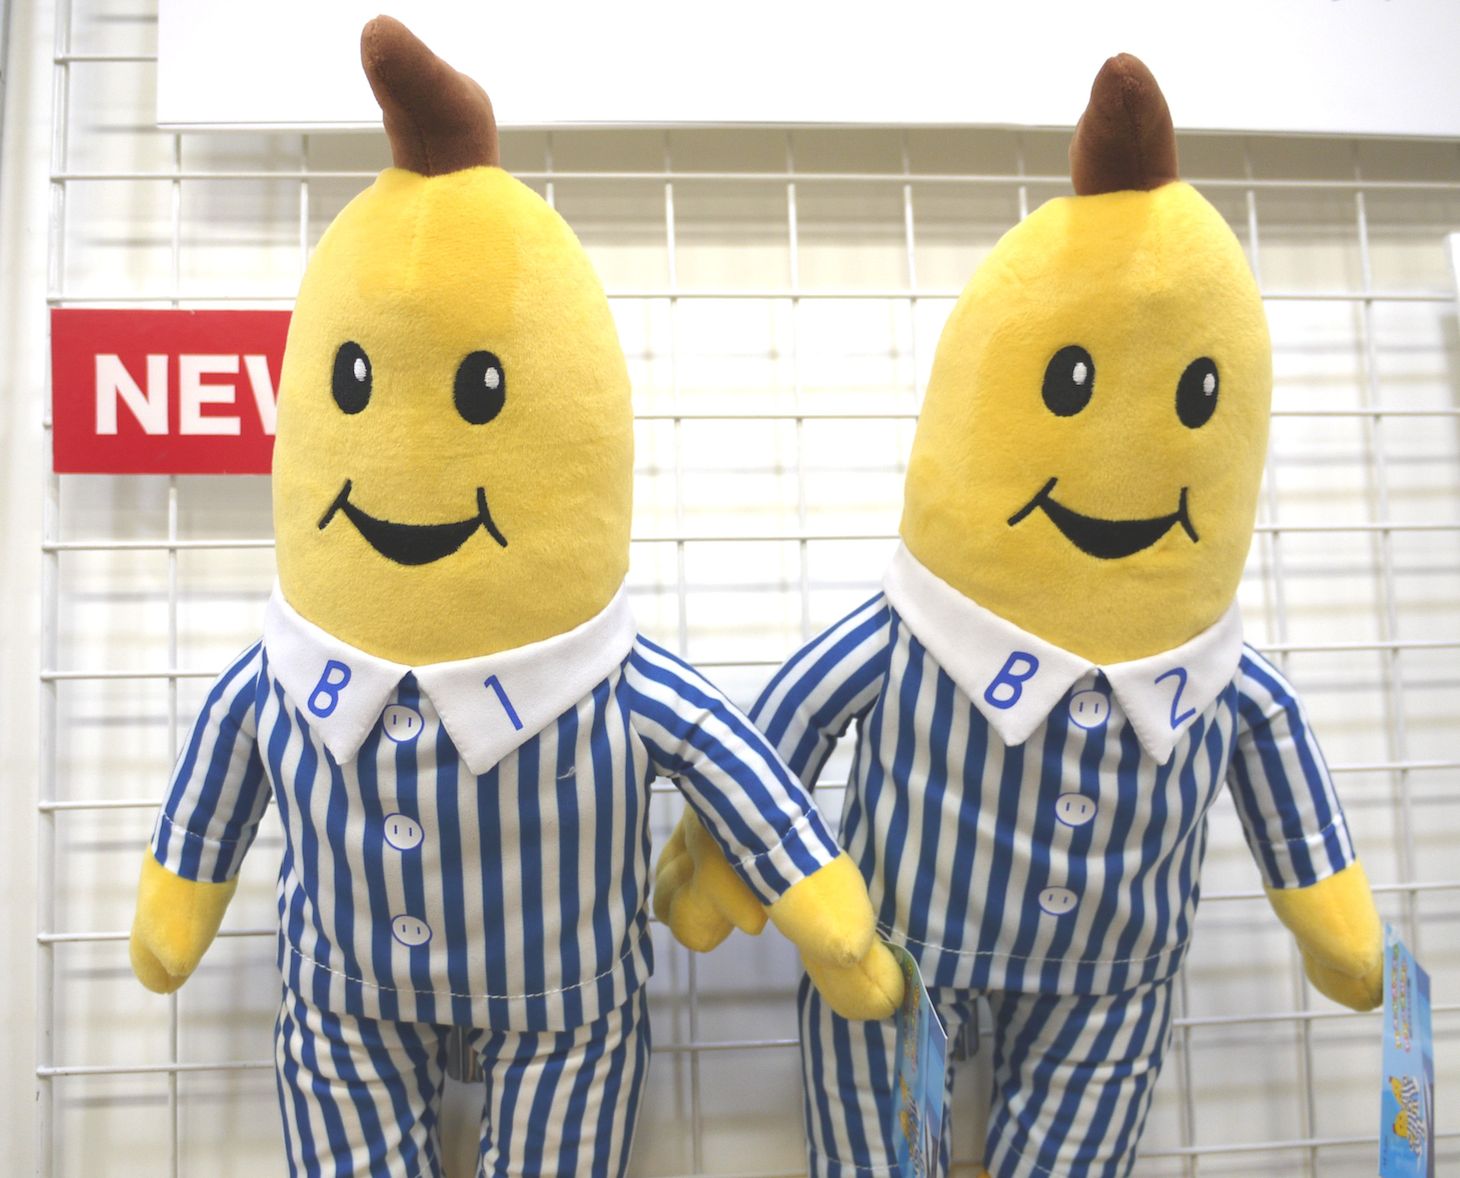 NHKで放送していた「バナナ イン パジャマ」グッズがいま発売される 